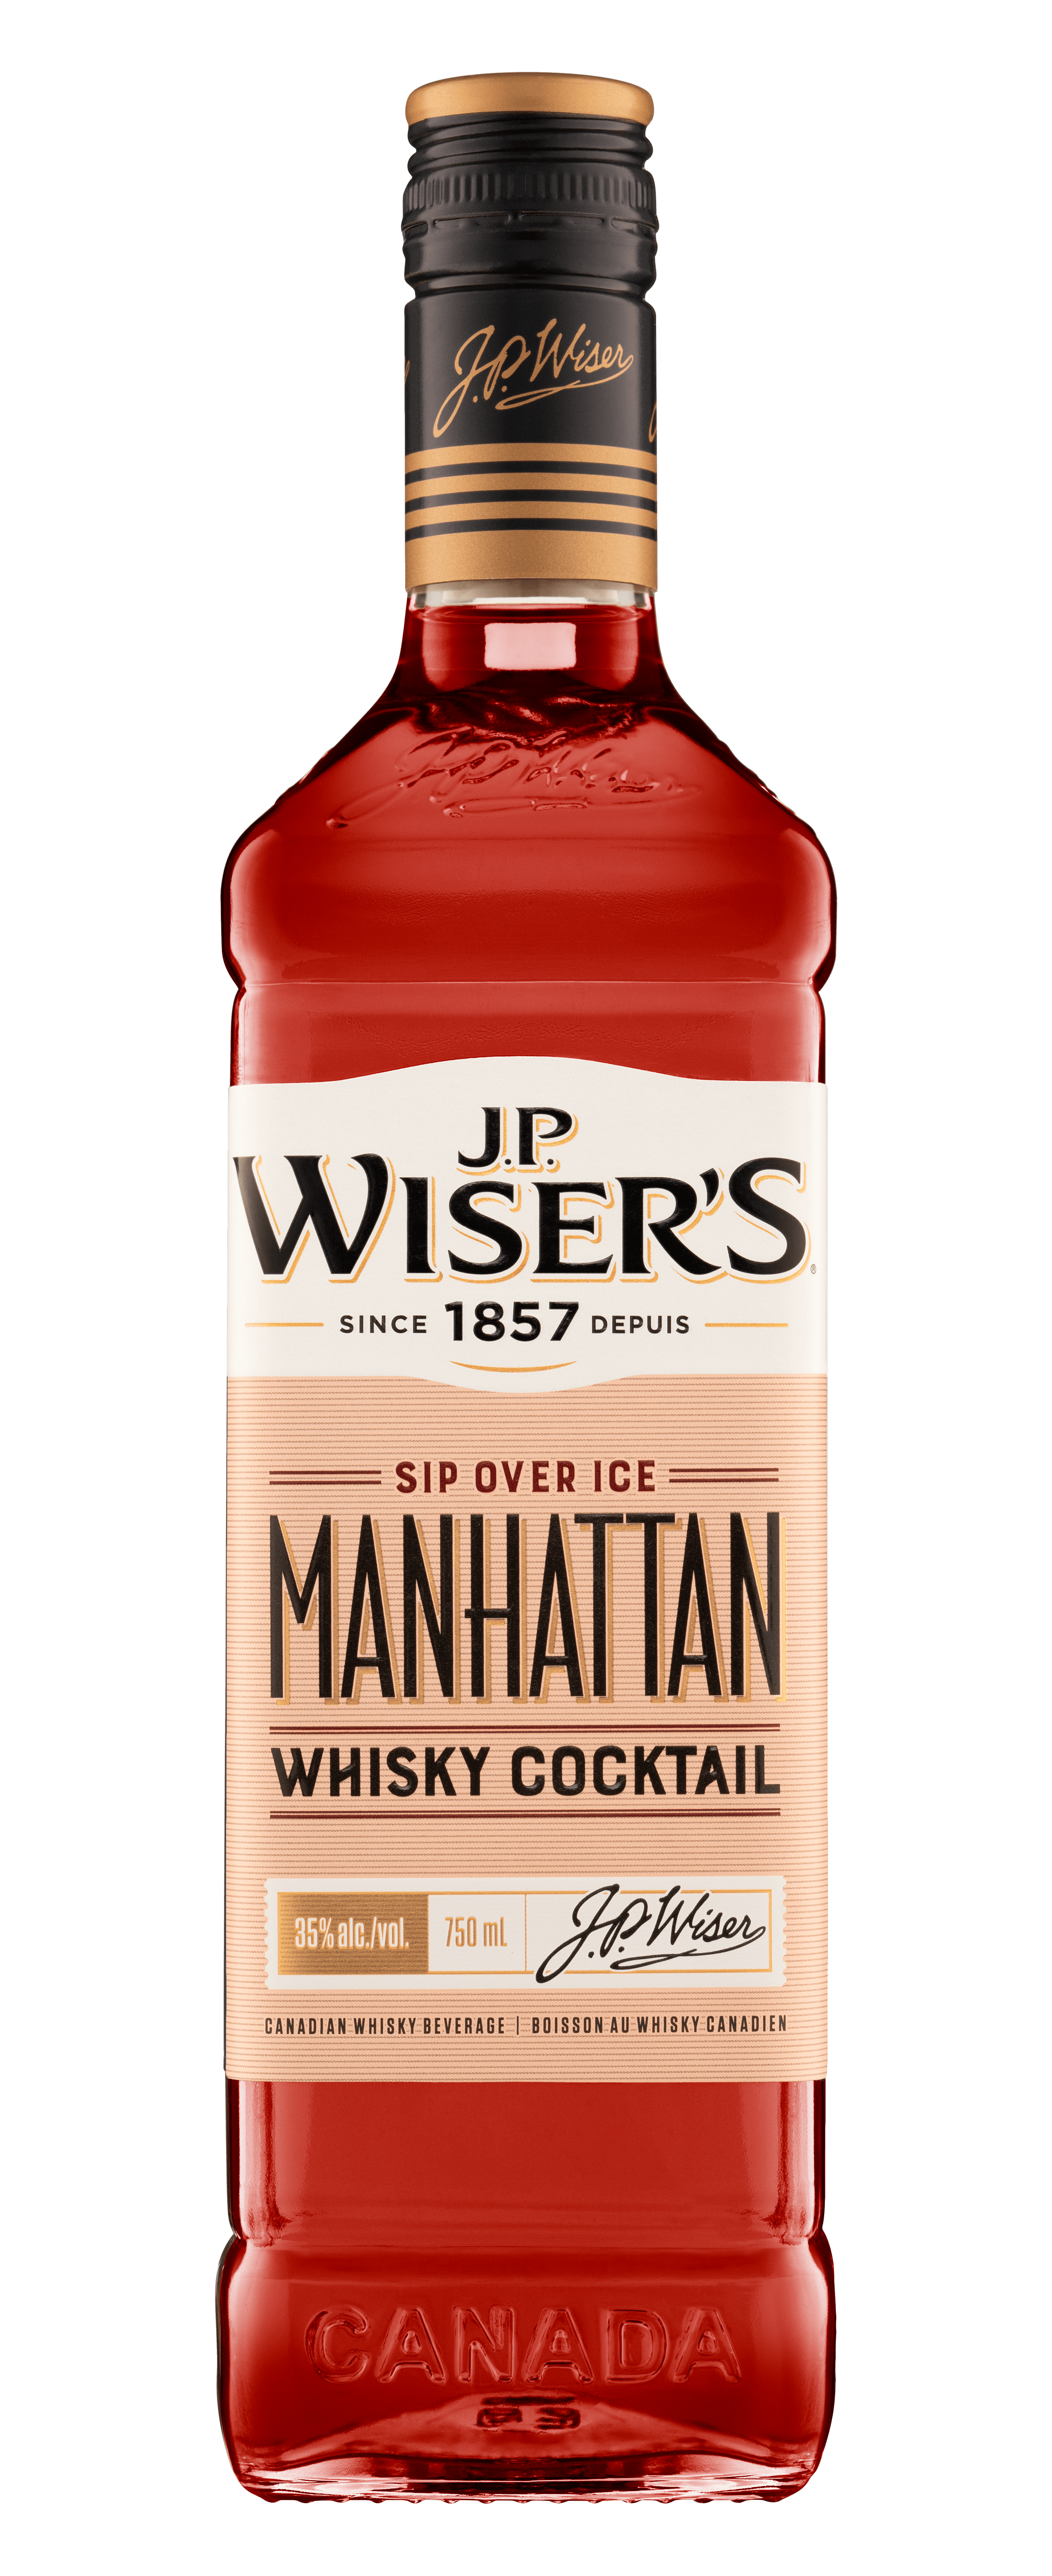 J.P. Wiser's Manhattan Whisky Cocktail 0.750 L